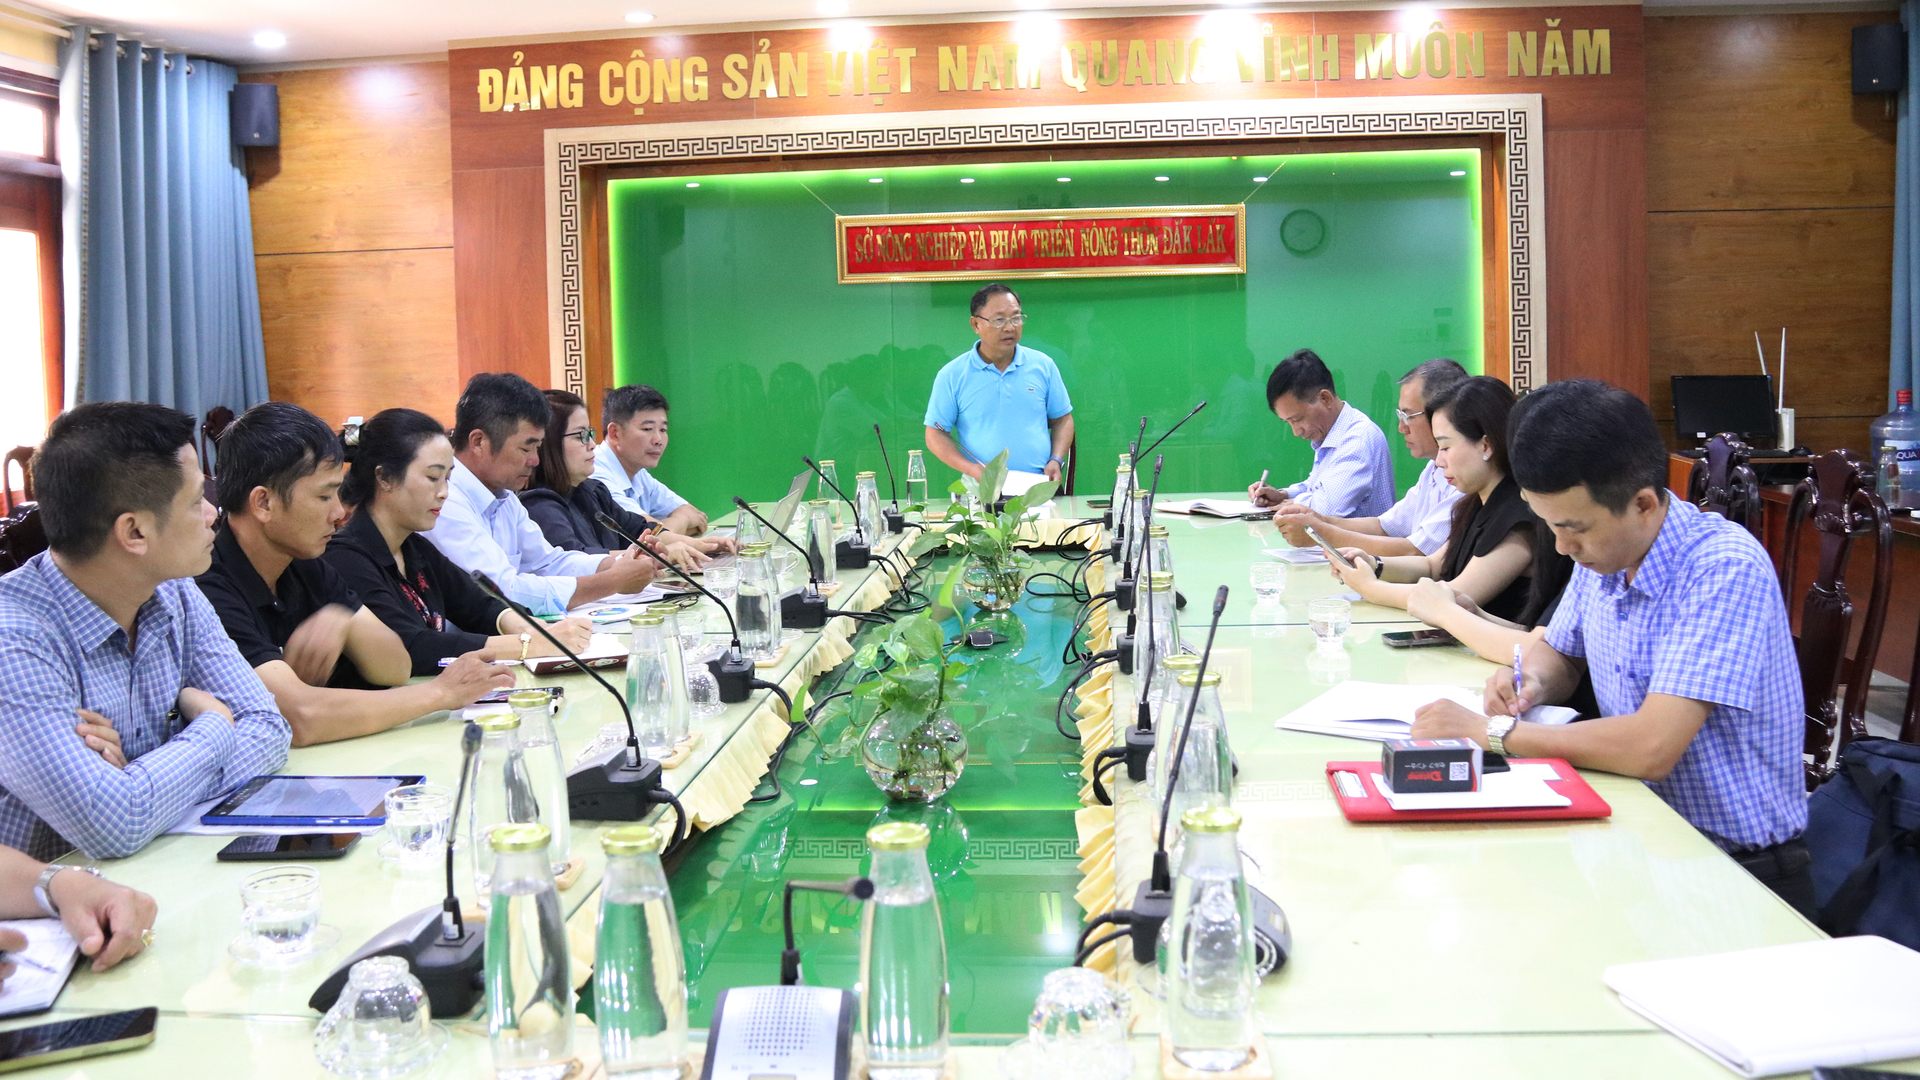 Các thành viên Hiệp hội sầu riêng Đắk Lắk họp triển khai nhiệm vụ ngày 8/6. Ảnh: Quang Yên.